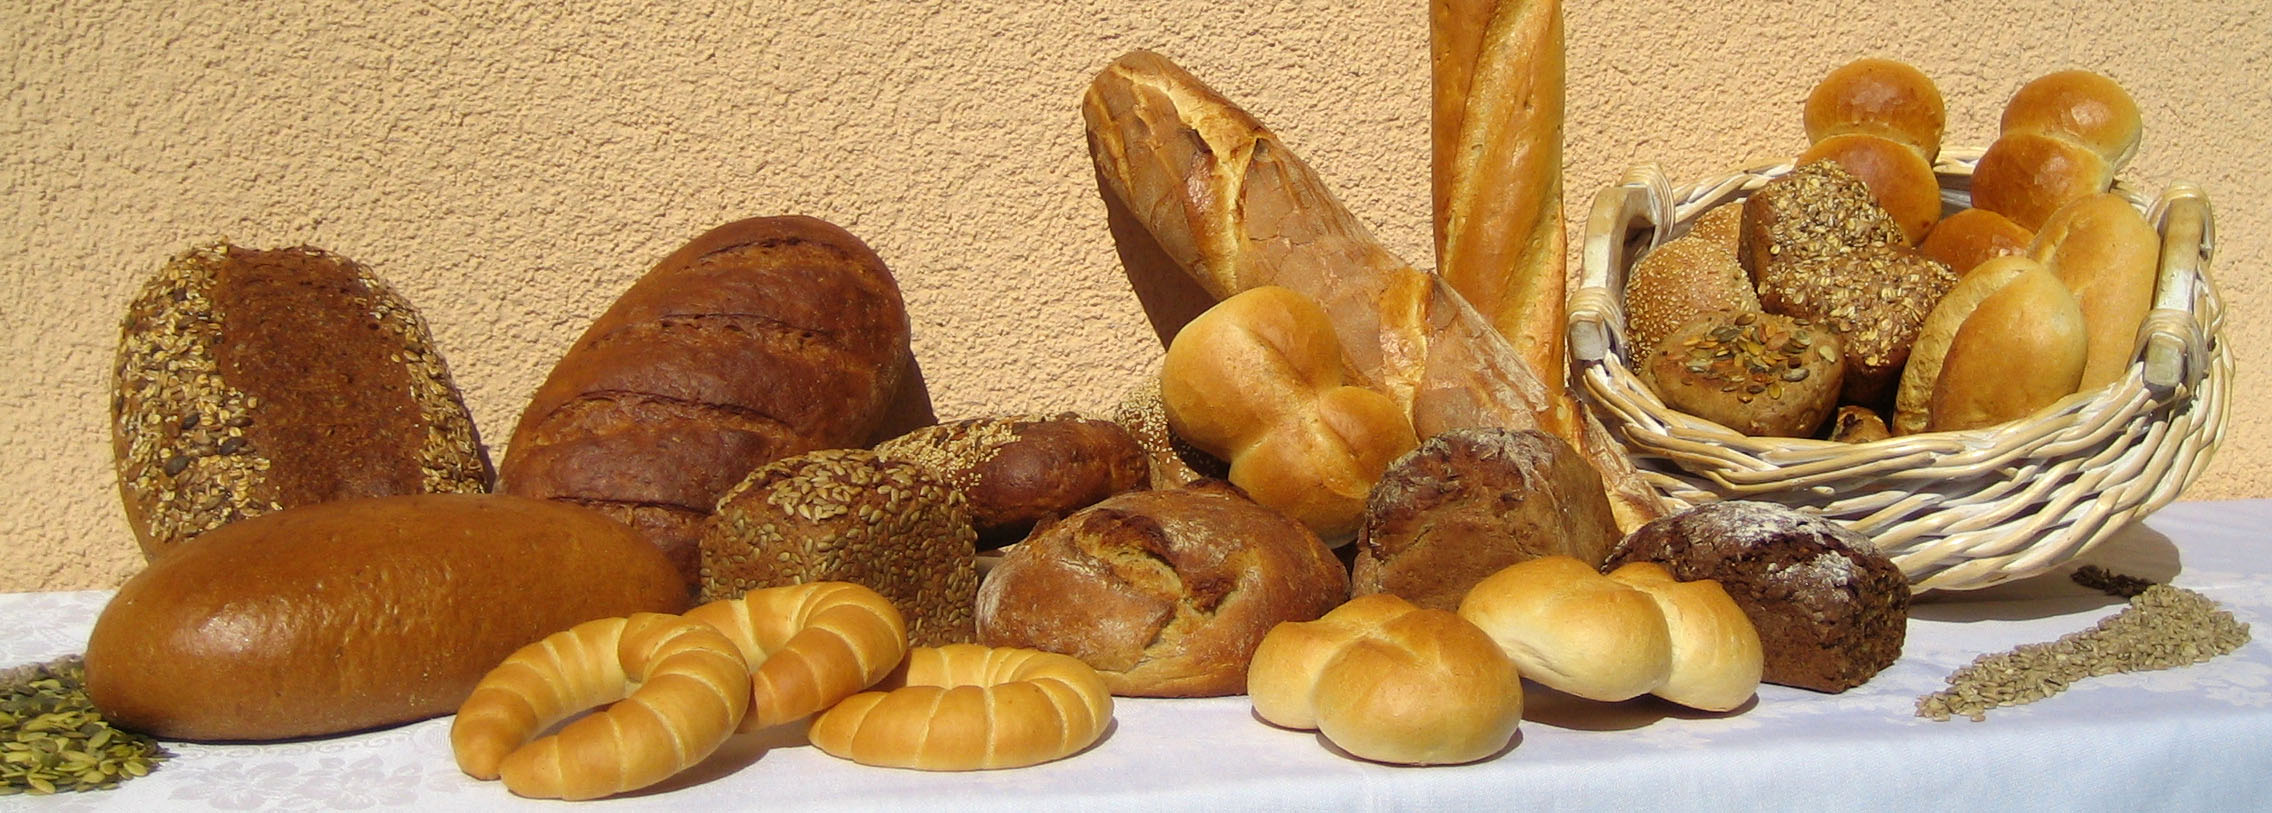 verschiedene Brote und Brötchen